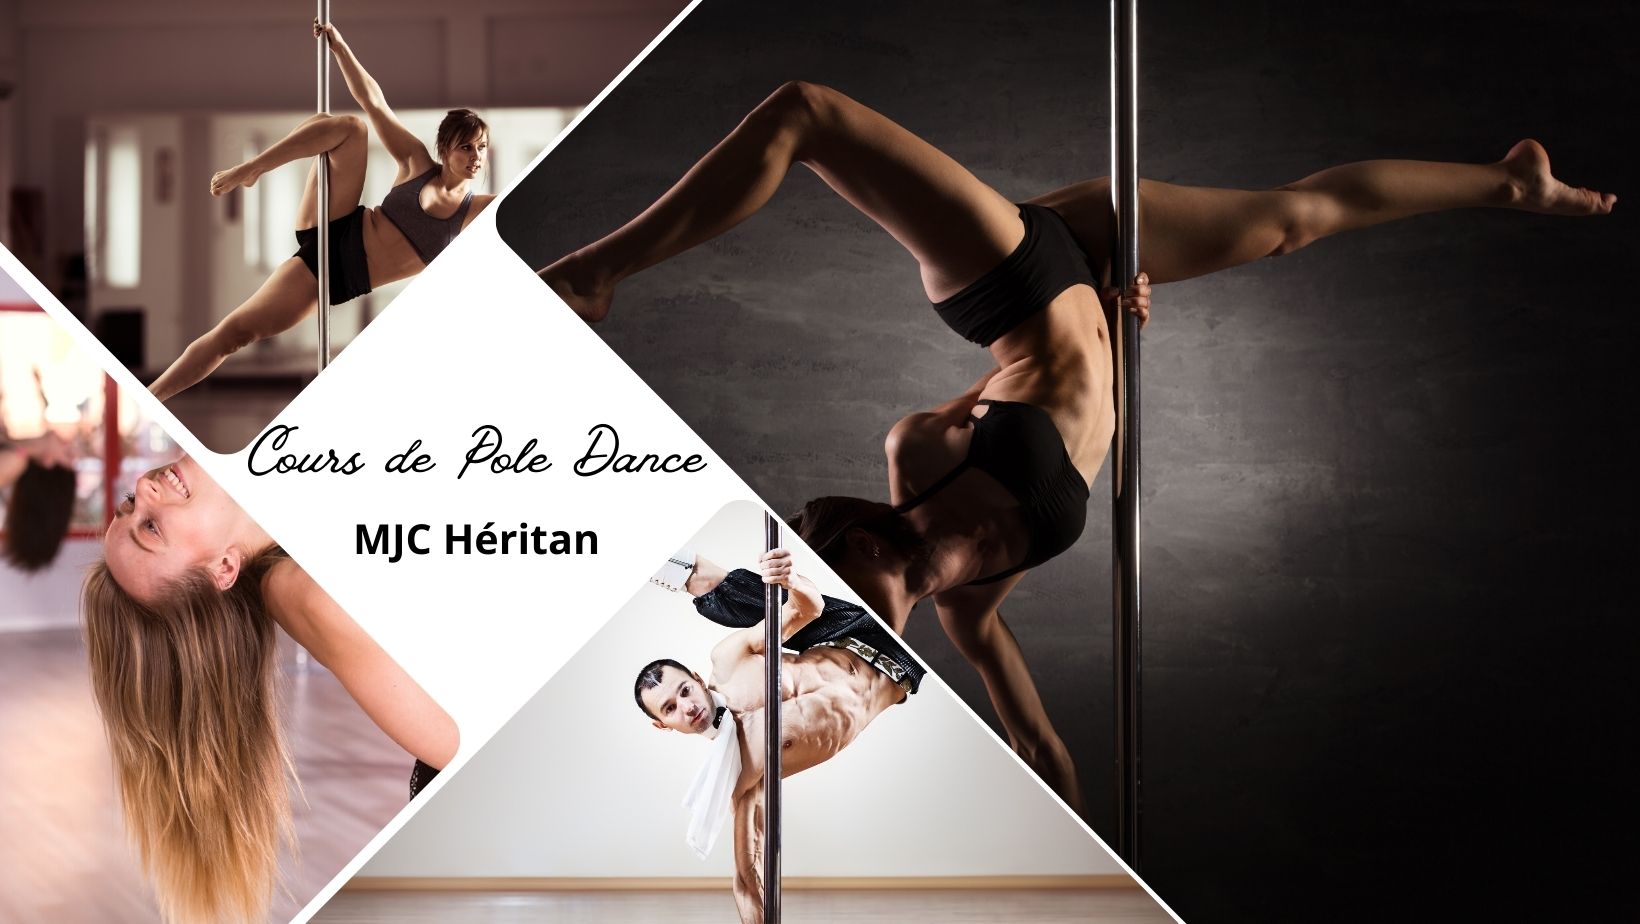 Mâcon : Cours de Pole Dance à la MJC Héritan